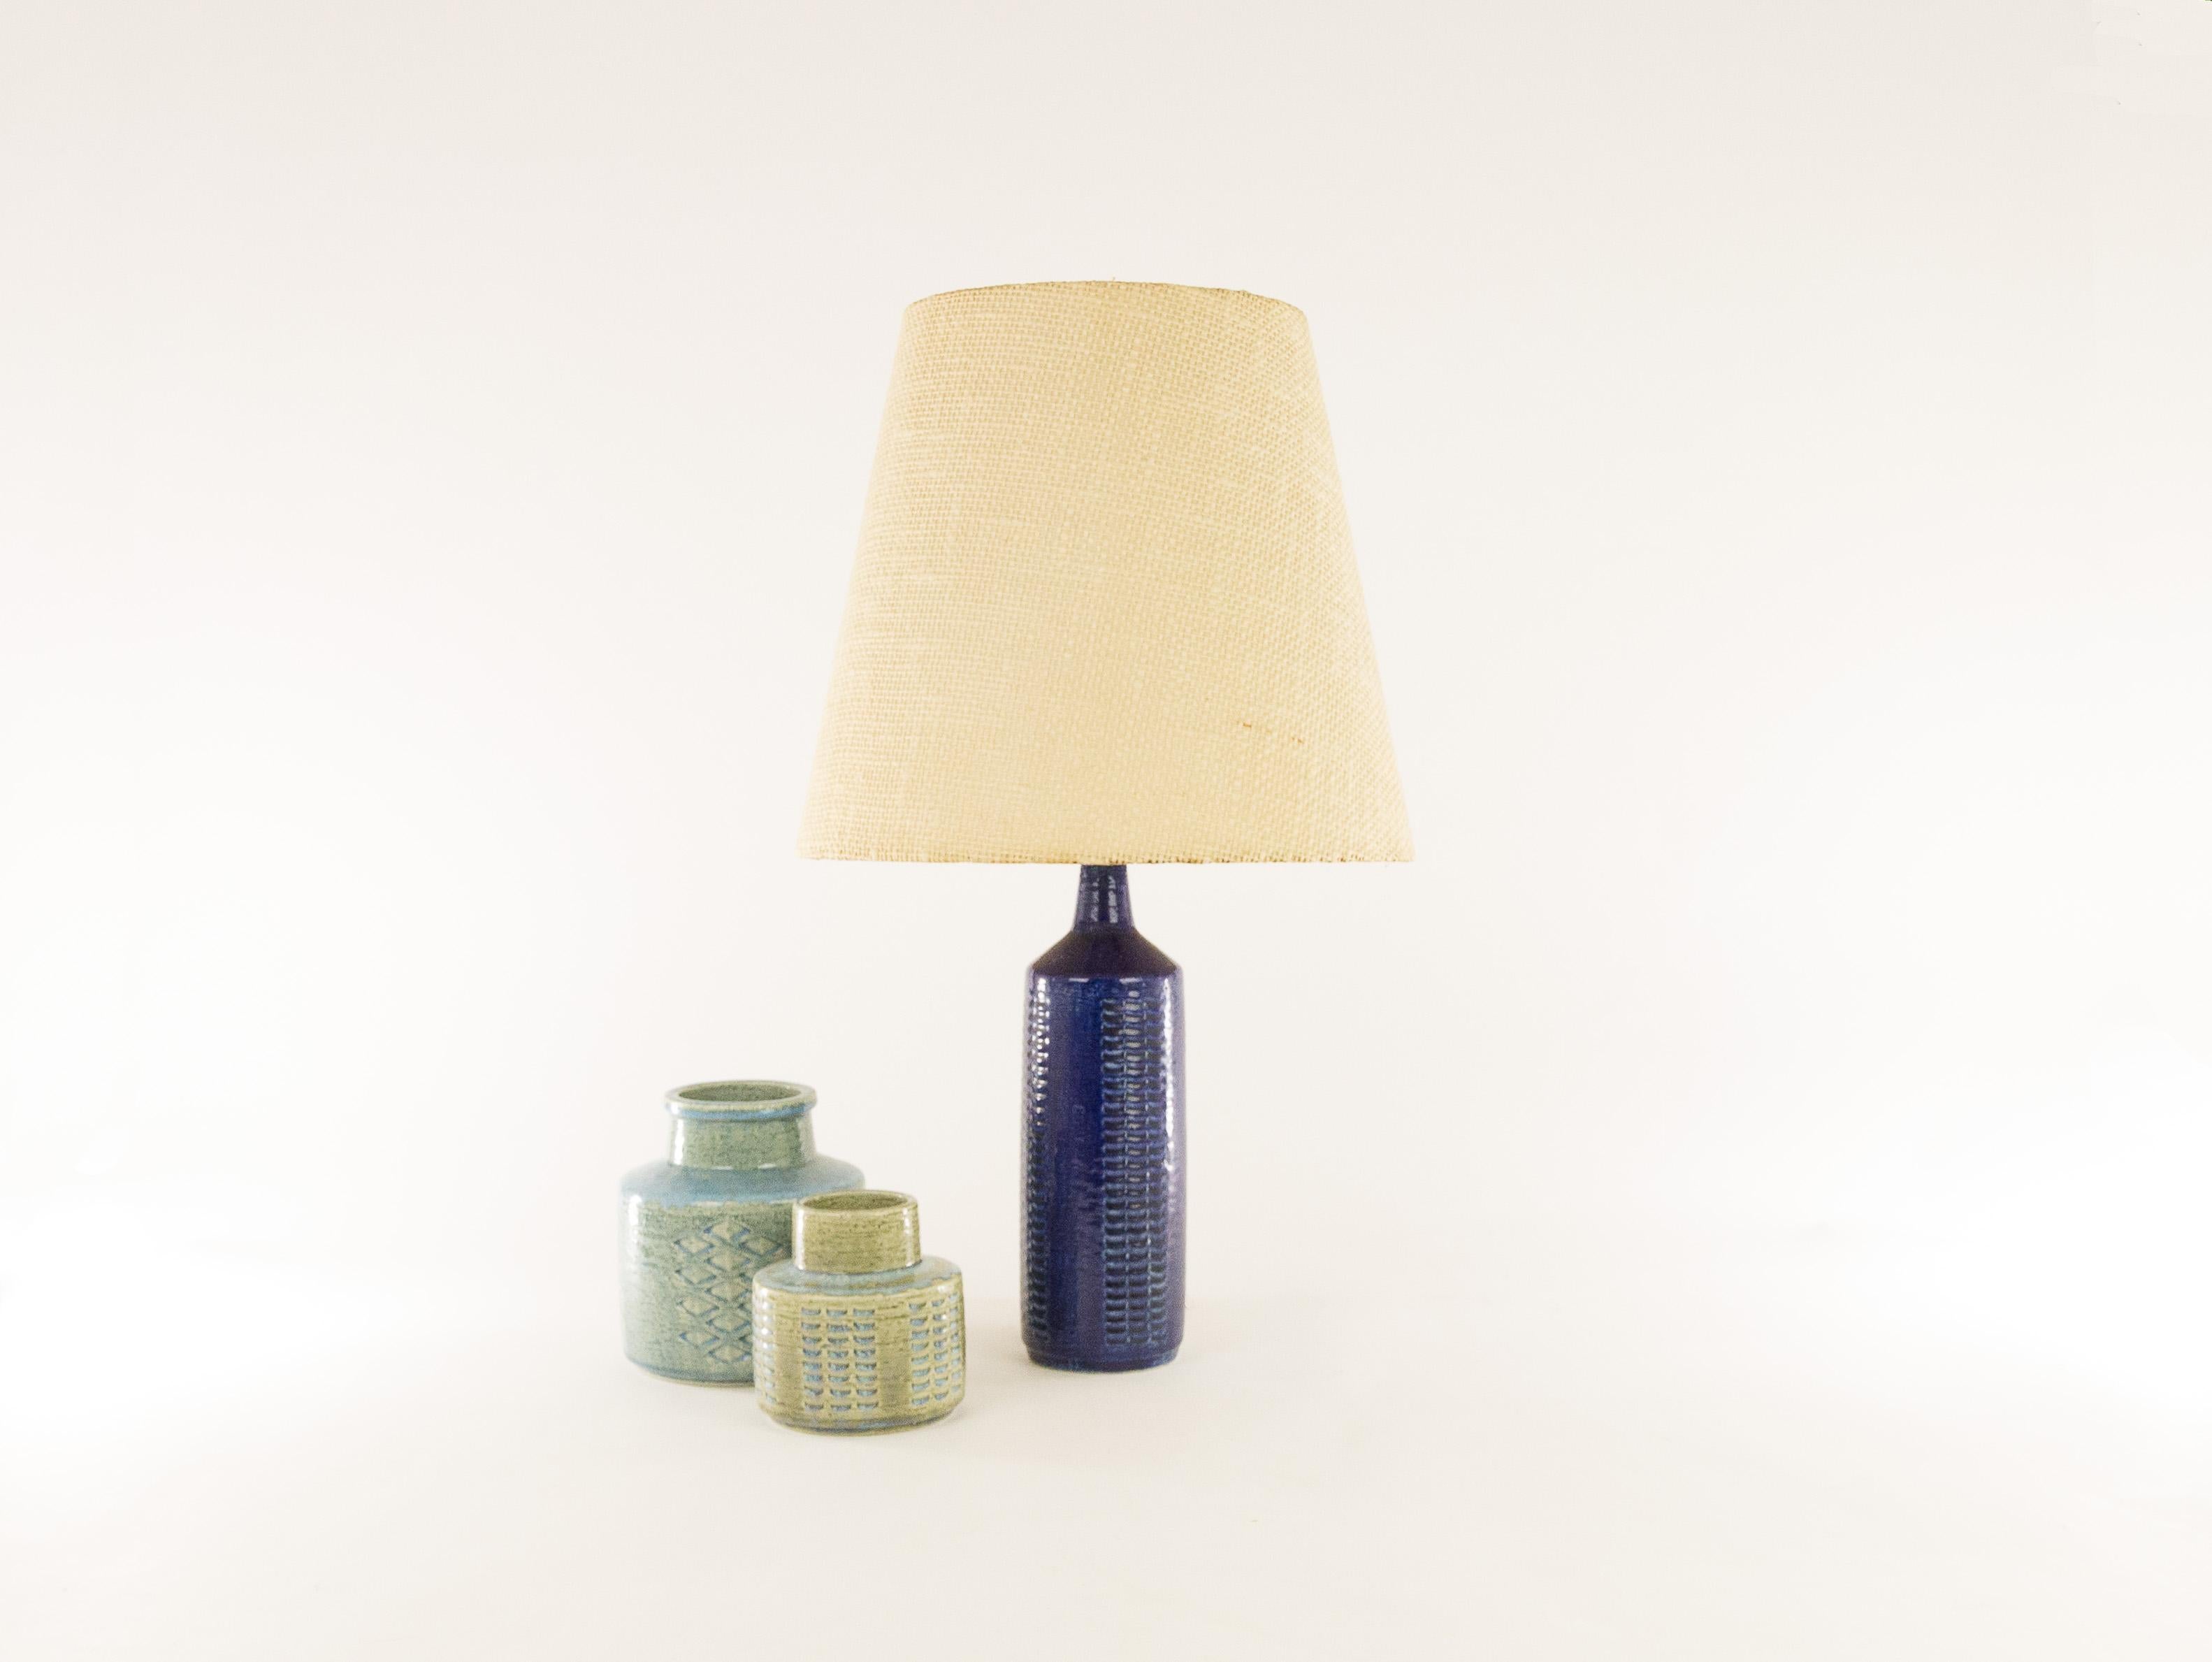 Une lampe de table DL/27 réalisée par Annelise et Per Linnemann-Schmidt pour Palshus dans les années 1960. La couleur de cette pièce est le bleu cobalt.

La lampe est livrée avec son support d'abat-jour d'origine. L'abat-jour illustré et les pots